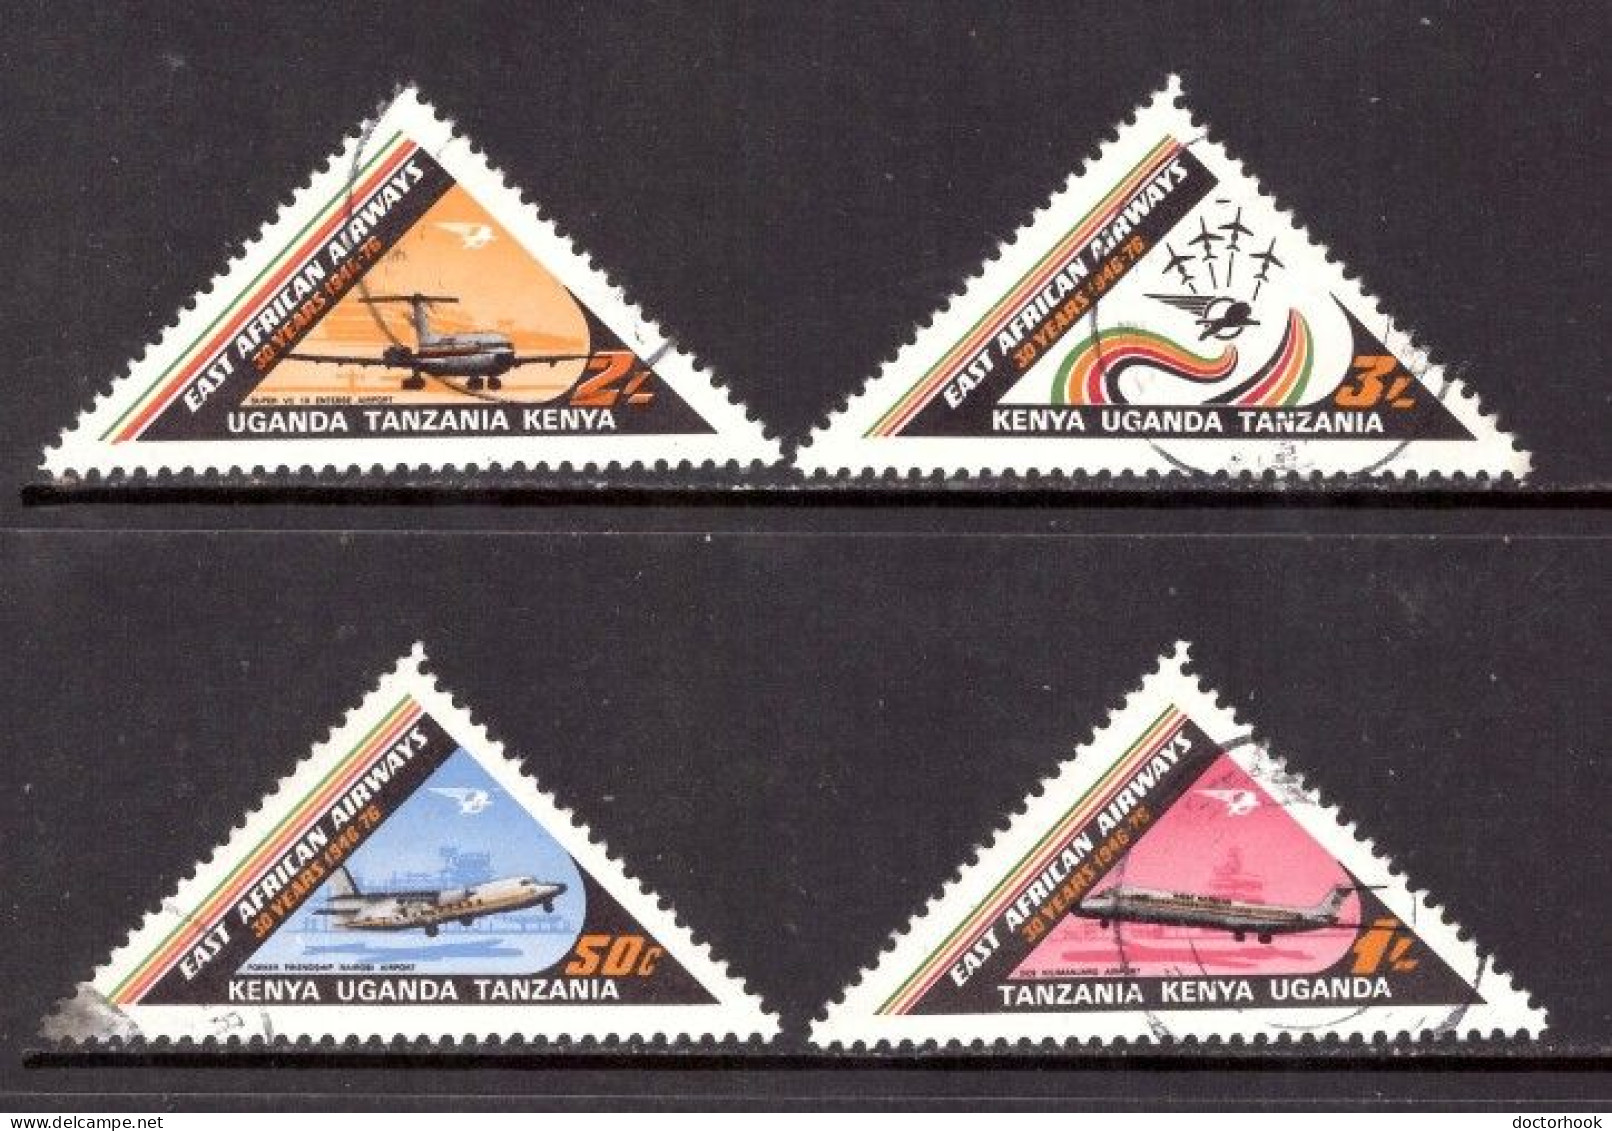 KENYA UGANDA & TANZANIA   Scott # 220-3 USED (CONDITION AS PER SCAN) (Stamp Scan # 978-14) - Kenya, Ouganda & Tanzanie